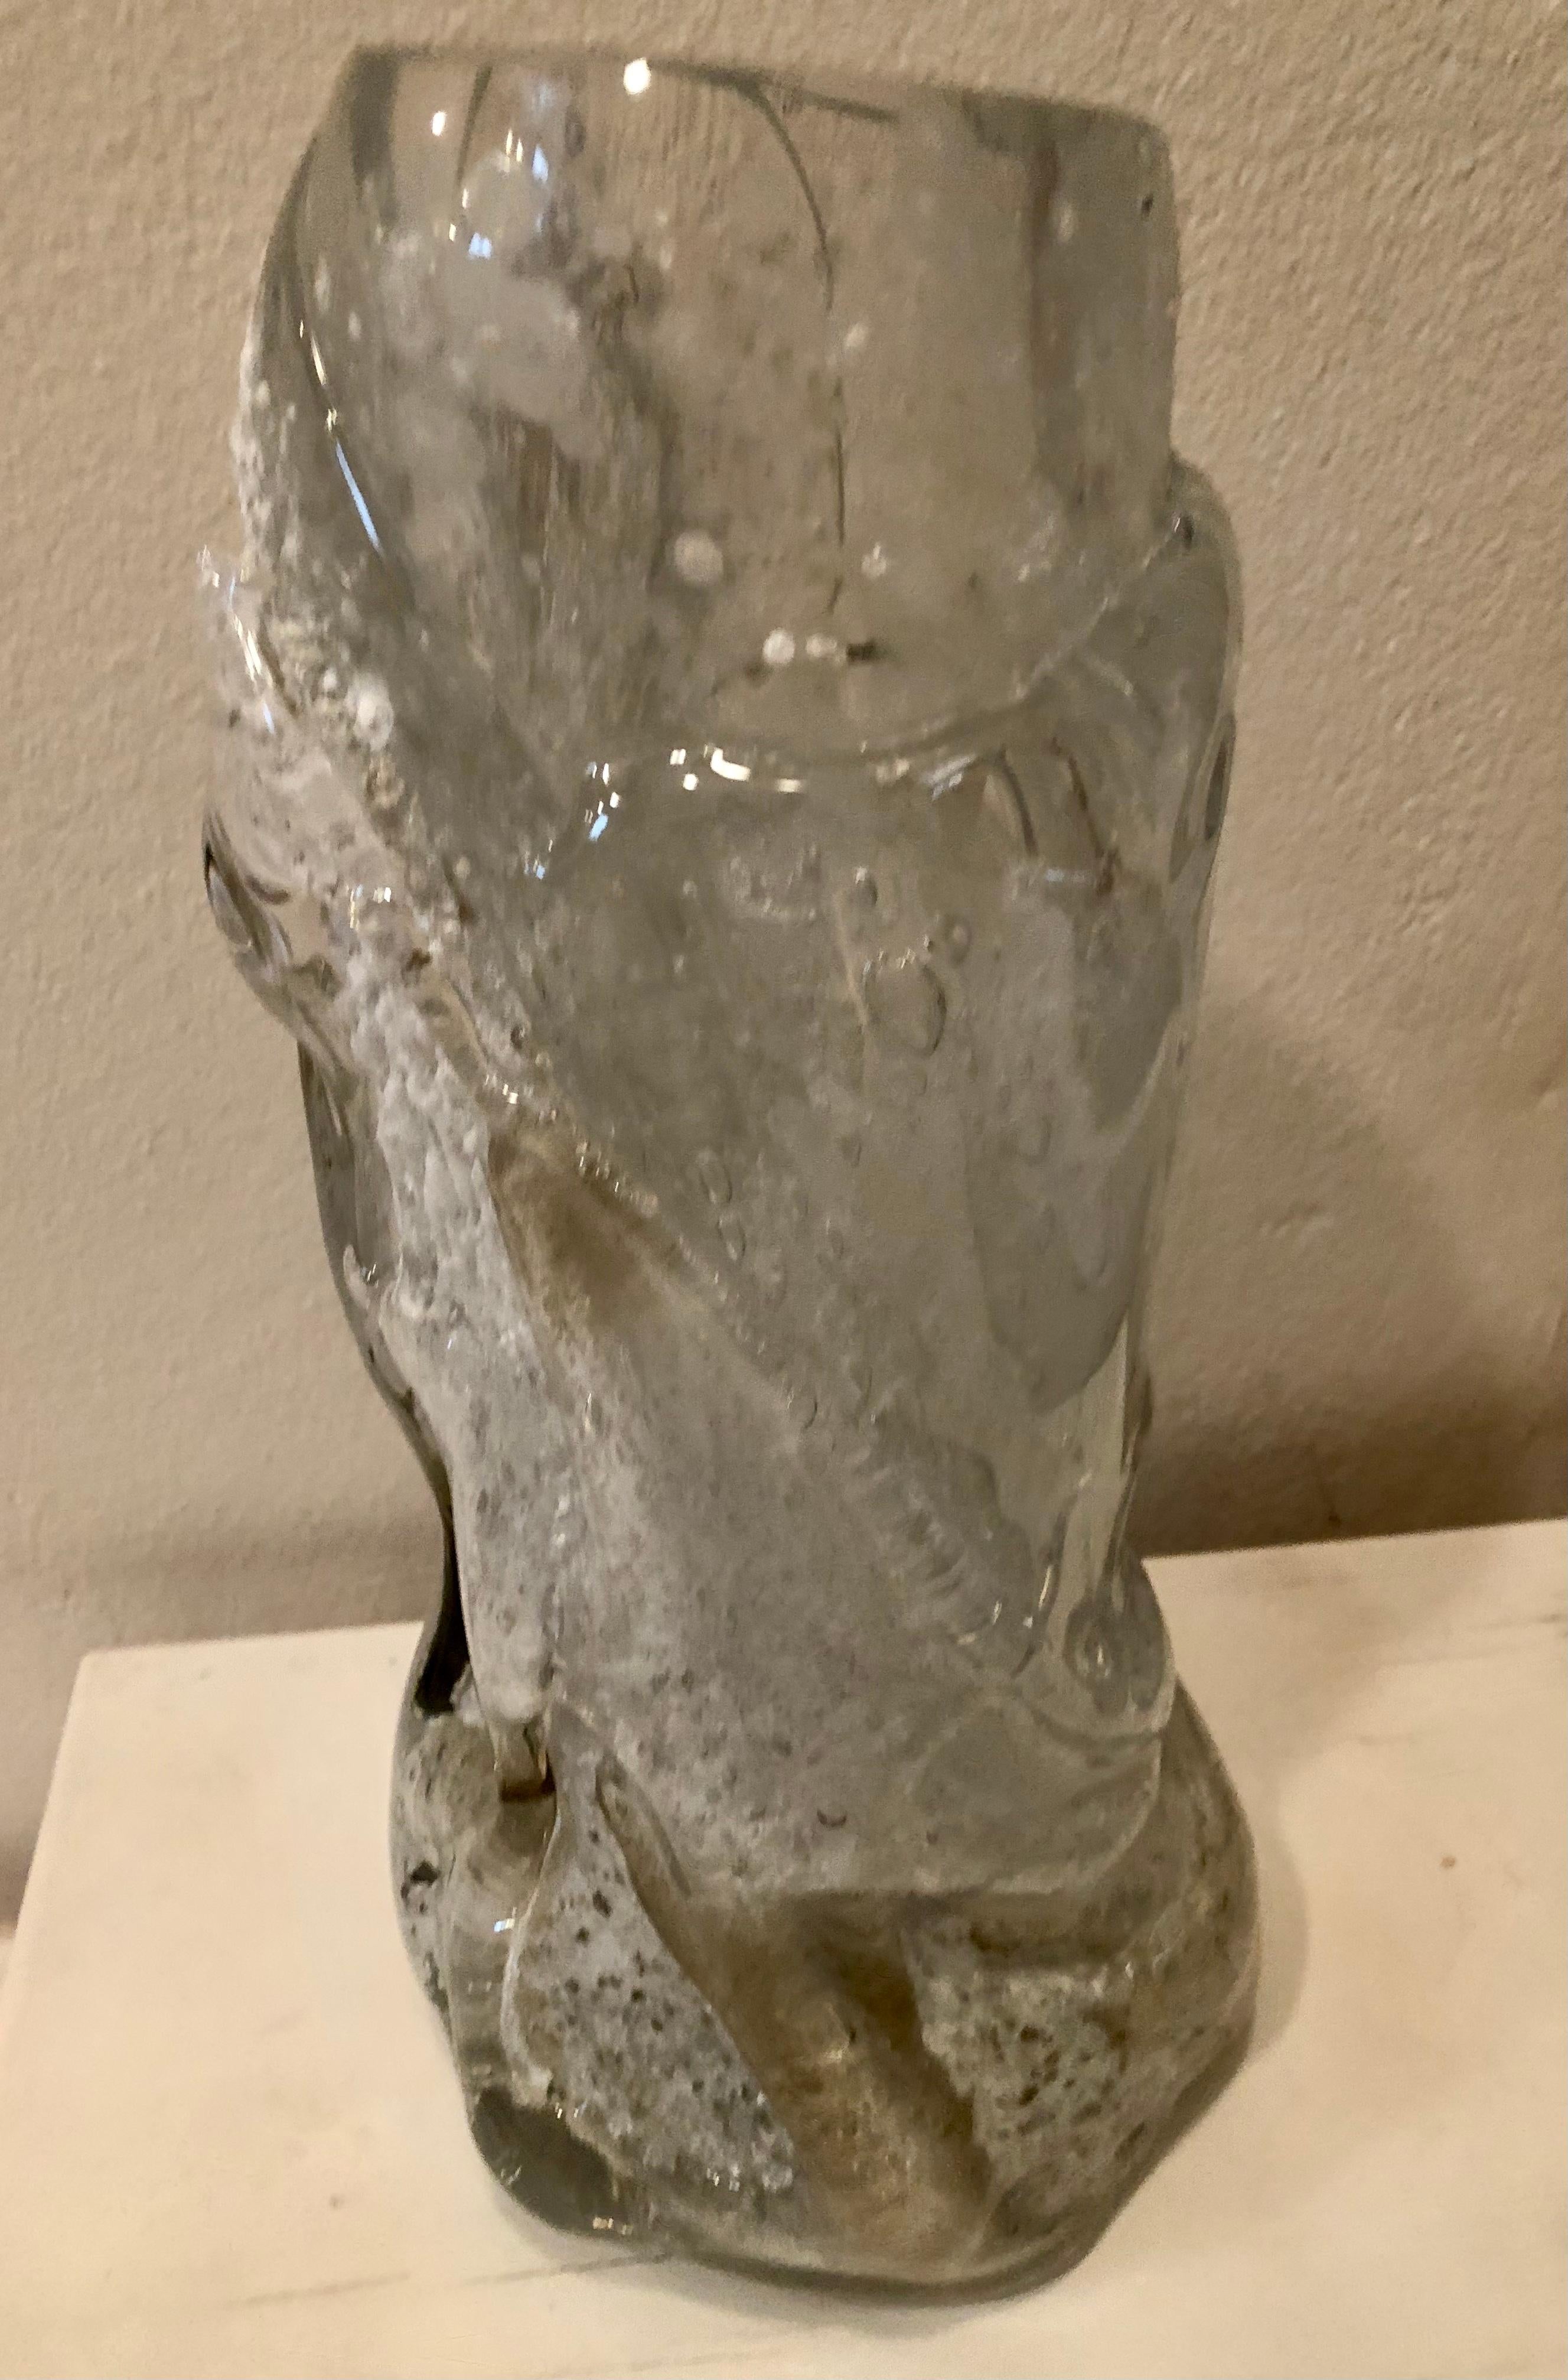 Patrik Illo est un verrier slovaque très talentueux. Il s'agit d'un vase unique réalisé selon sa technique personnelle. Le vase est assez lourd 5,6. Kg mais c'est une pièce unique et exquise.